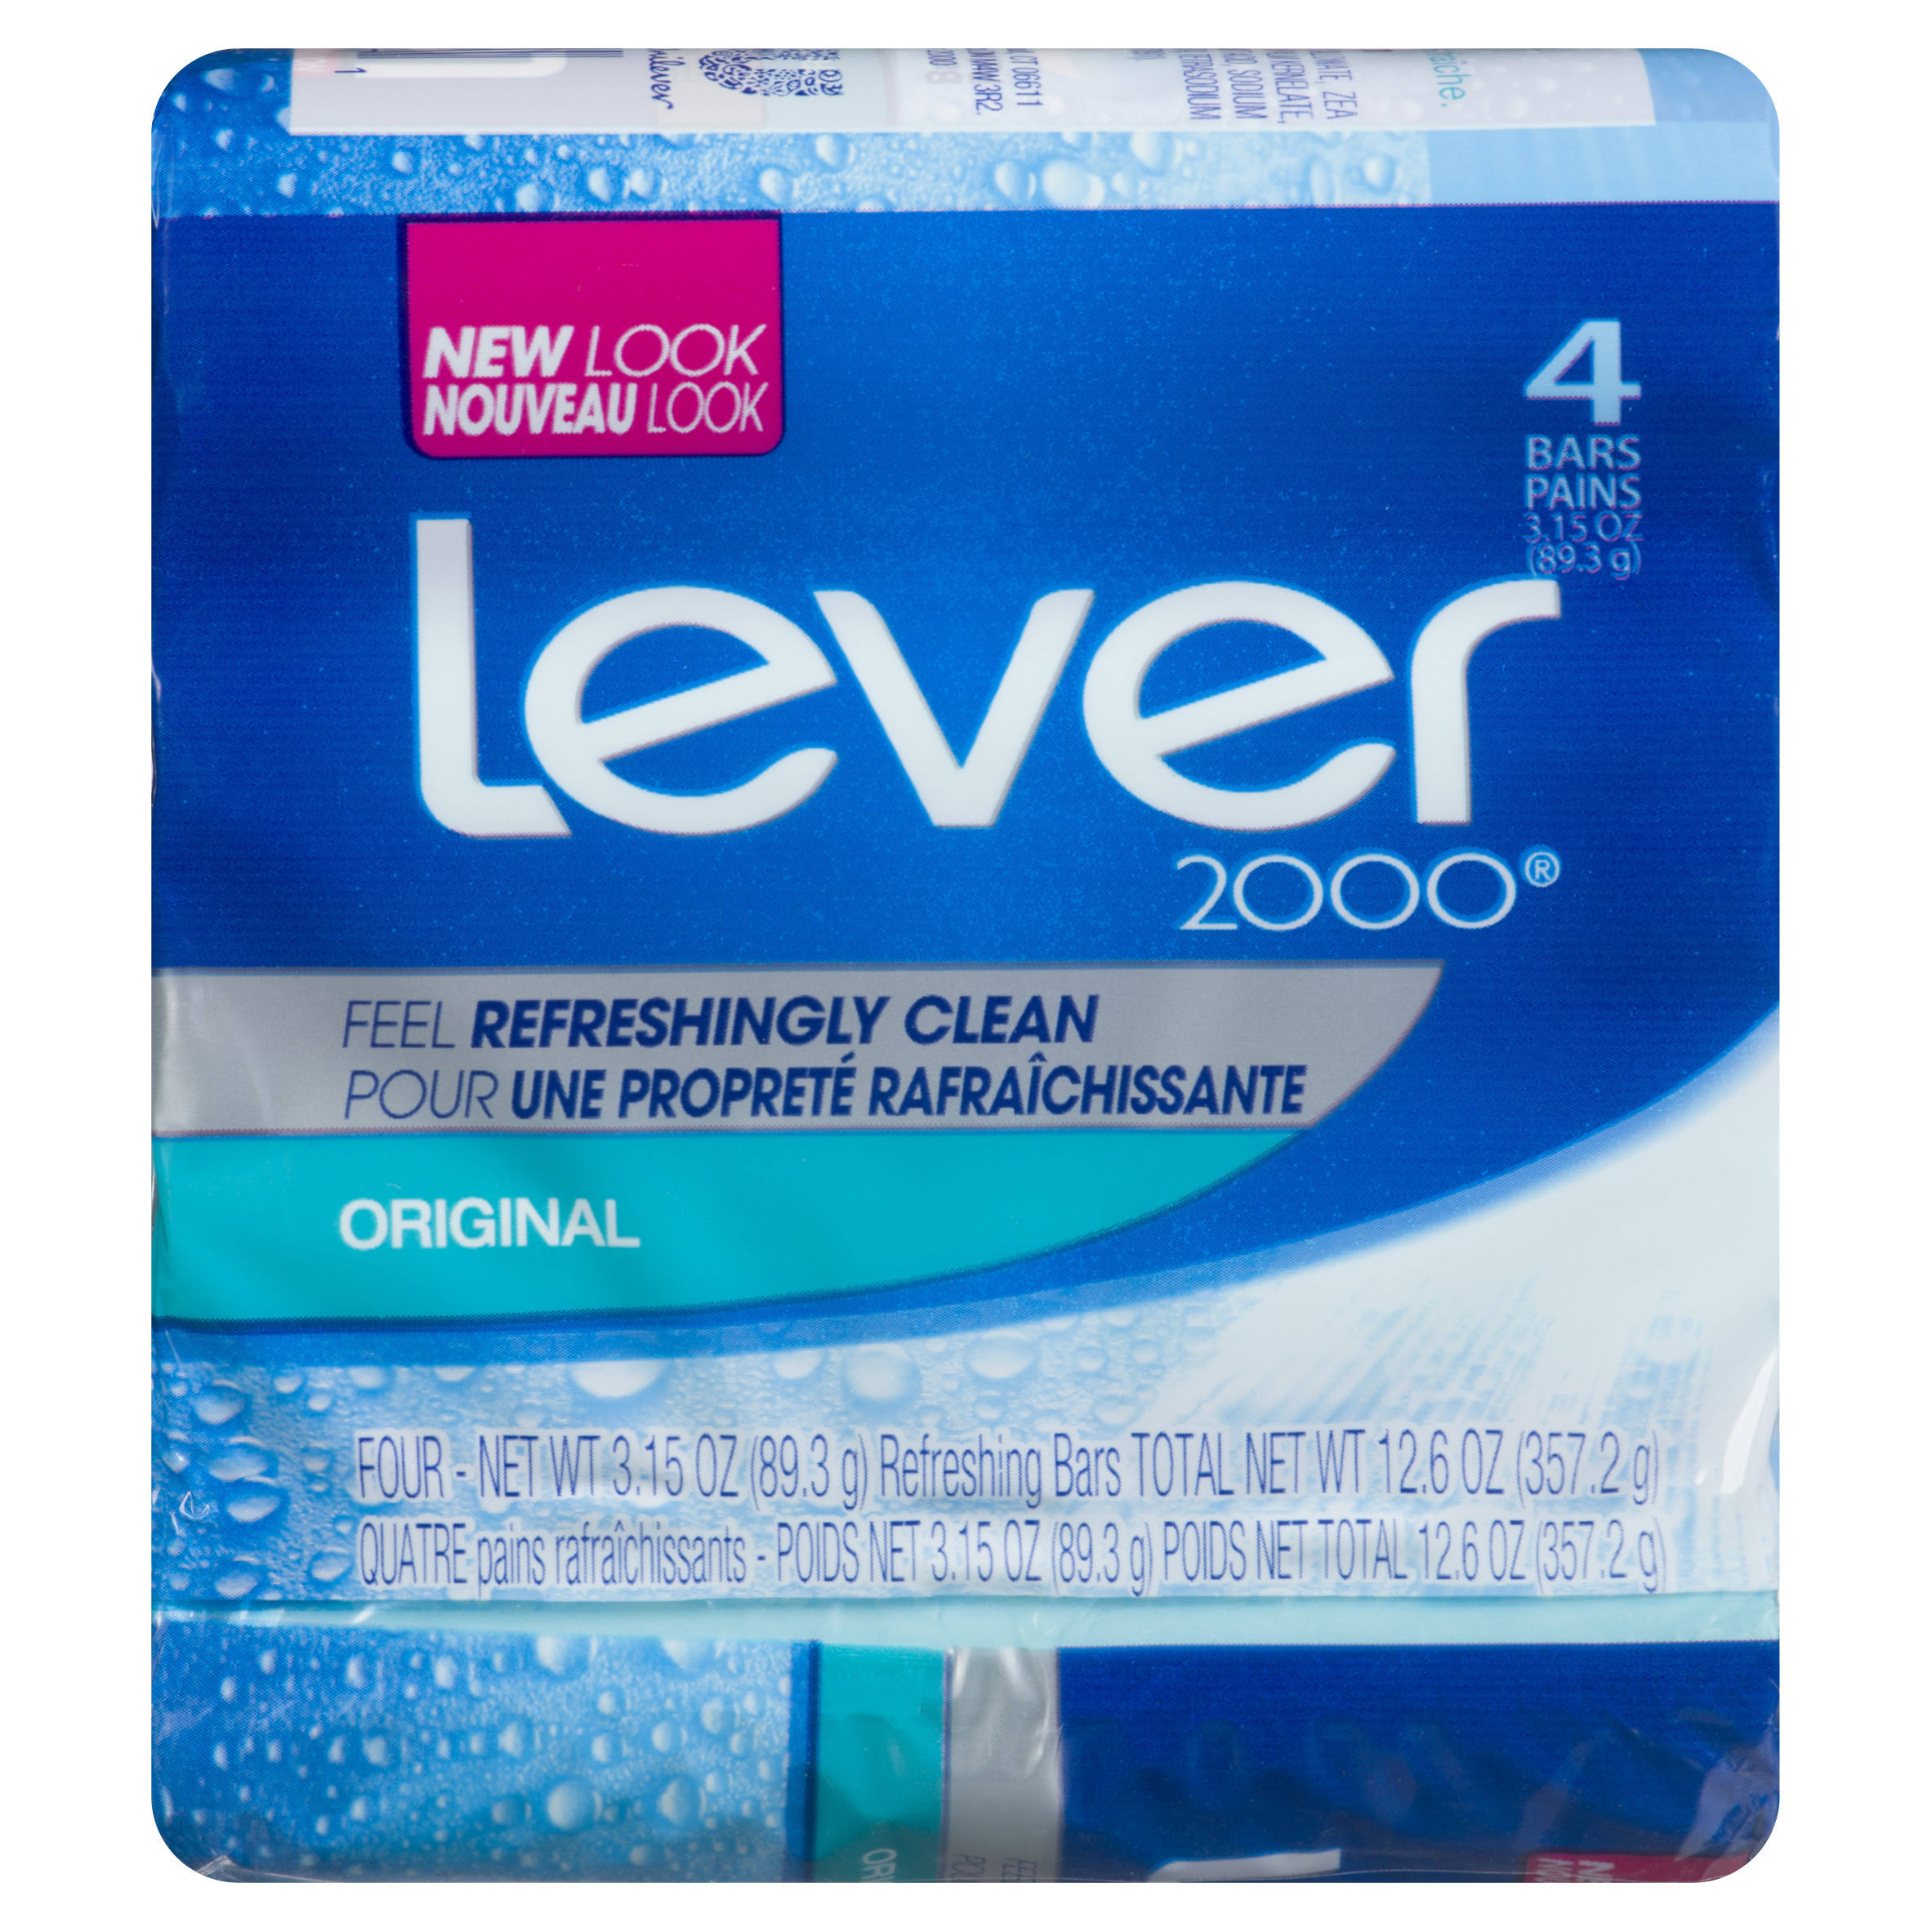 Lever 2000 Original Soap Bar - 3.15oz, 4ct